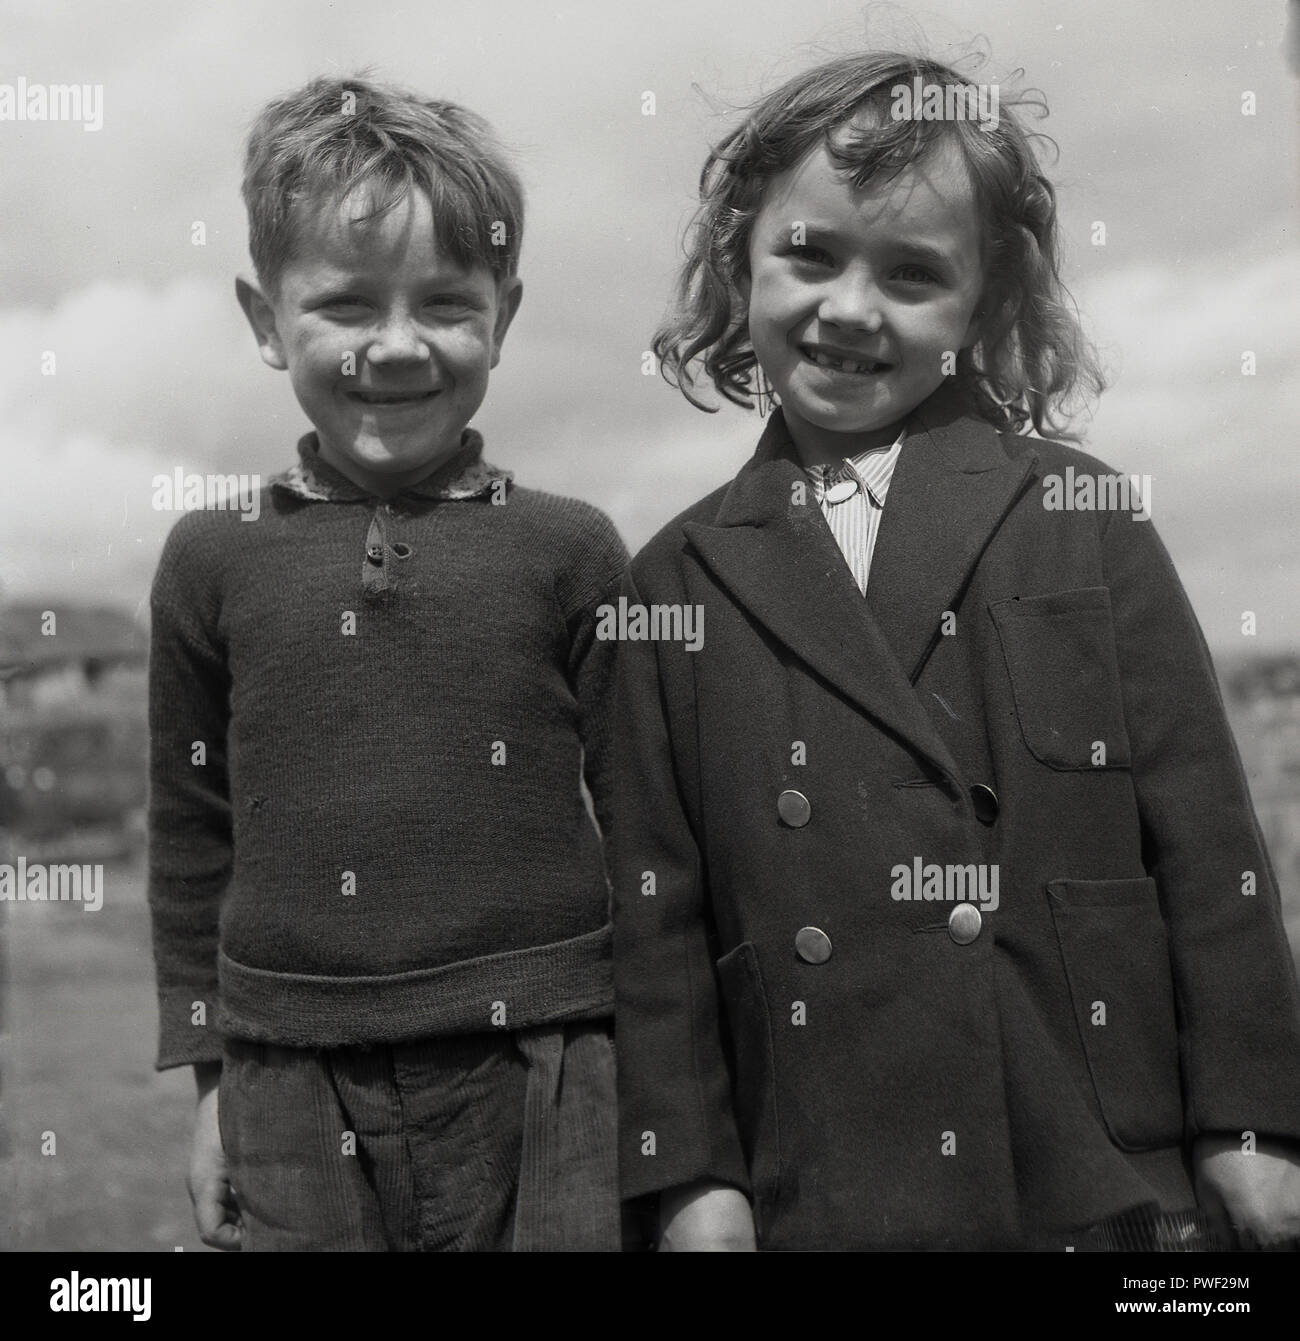 Années 1950, historique, un jeune garçon et fille irlandaise se tenir à côté de l'autre avec de grands sourires pour une photo, l'Irlande du Nord, Royaume-Uni. Banque D'Images